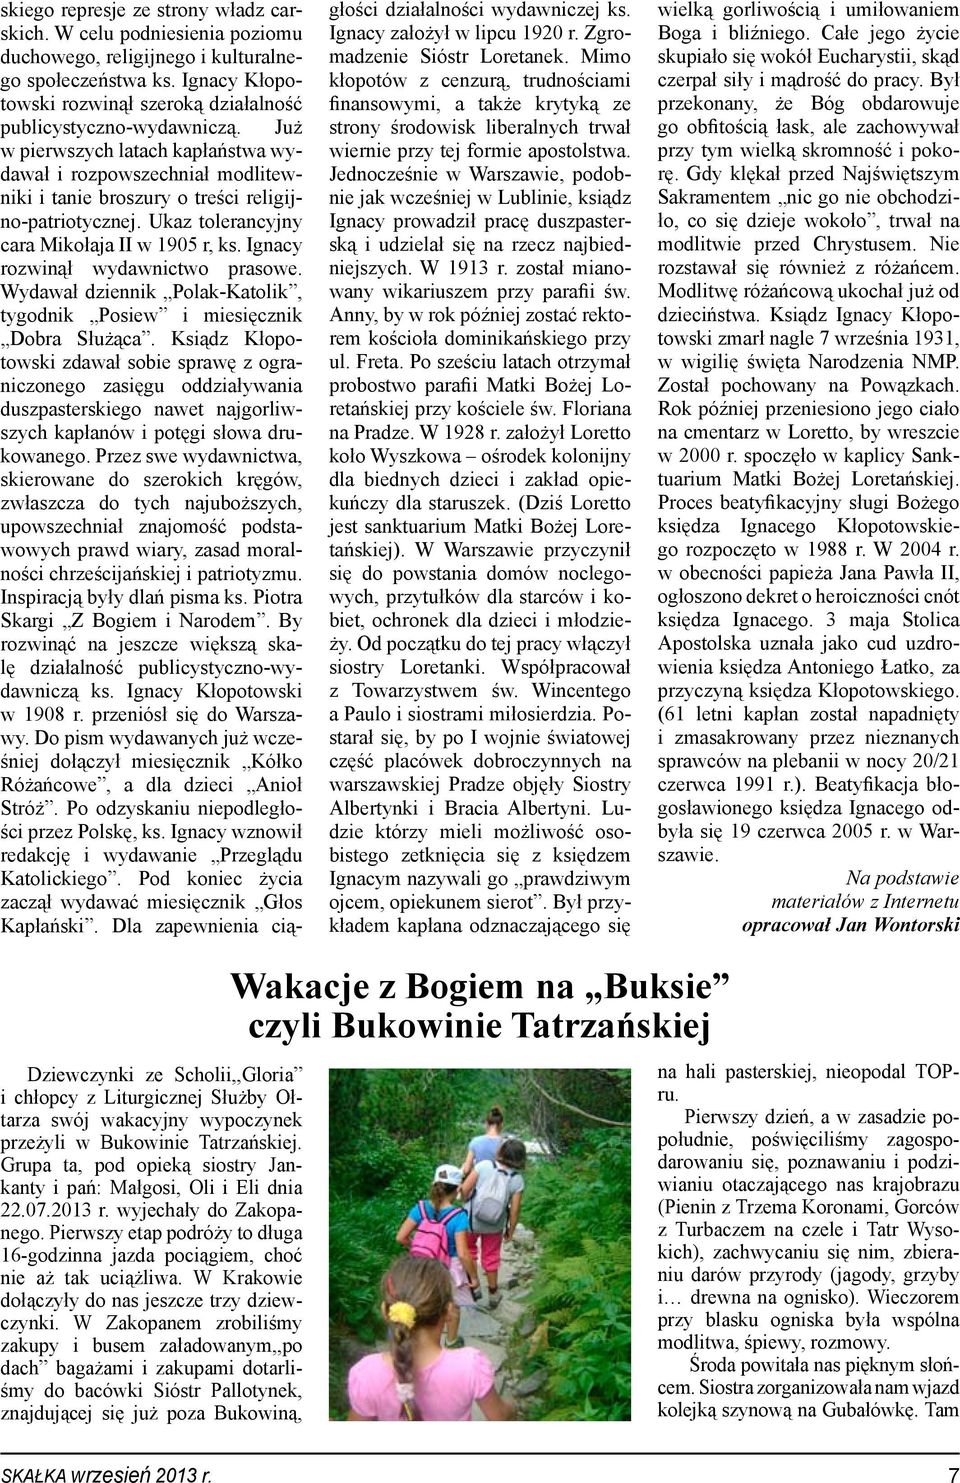 Ignacy rozwinął wydawnictwo prasowe. Wydawał dziennik Polak-Katolik, tygodnik Posiew i miesięcznik Dobra Służąca.